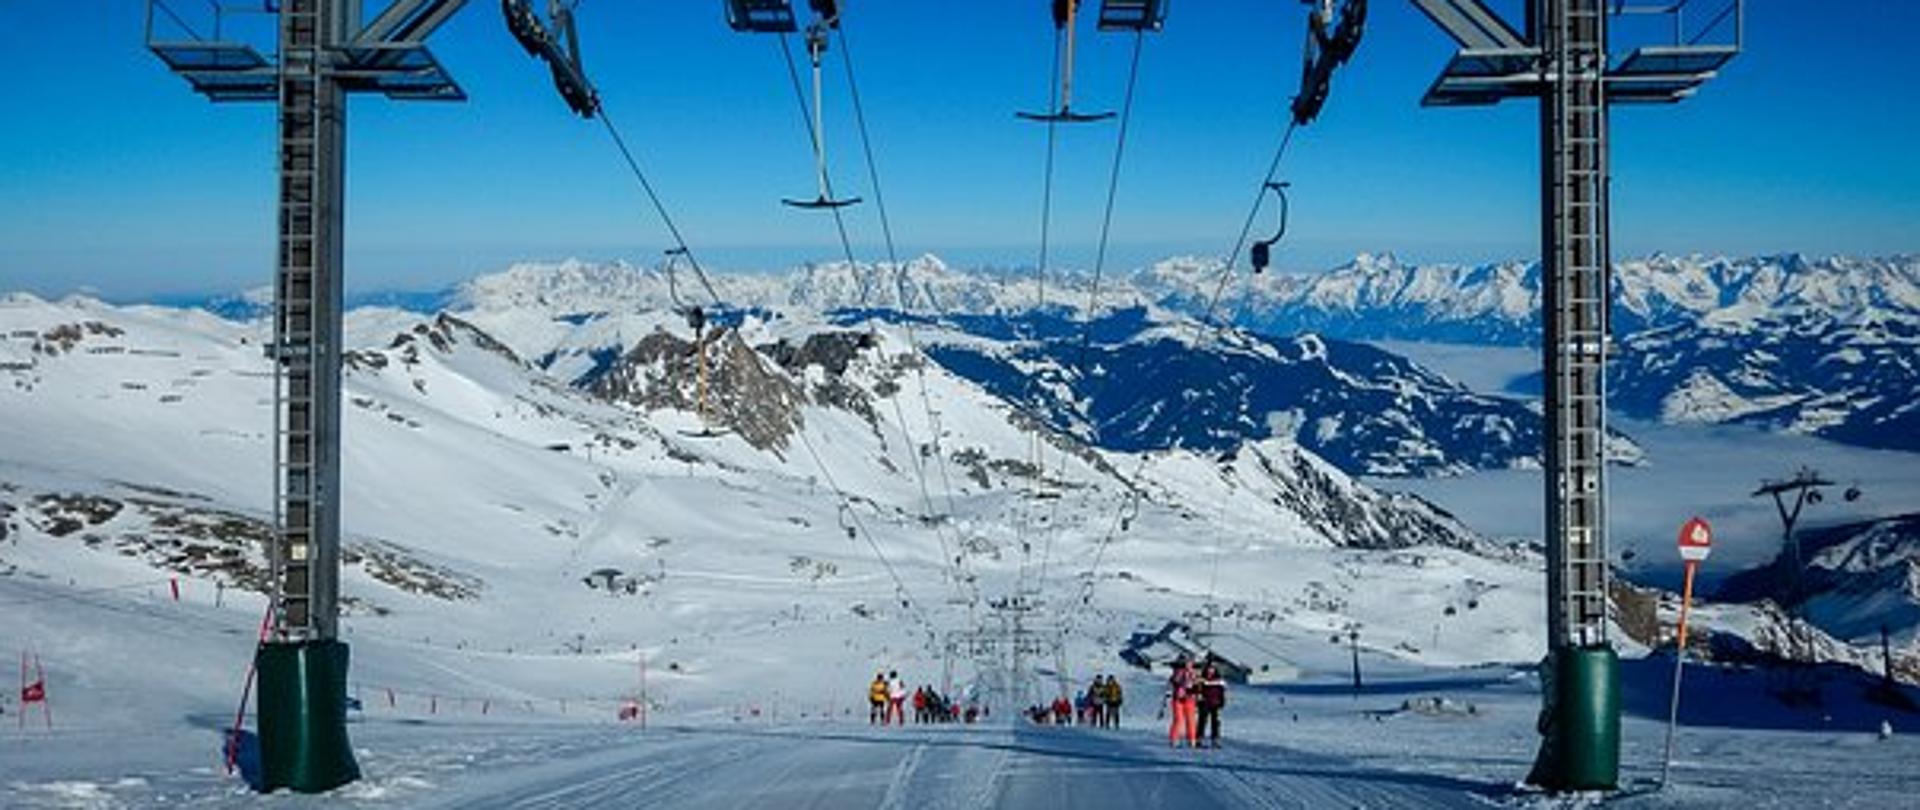 Na zdjęciu widnieje ośnieżony stok narciarski z wyciągiem, w tle panorama gór.